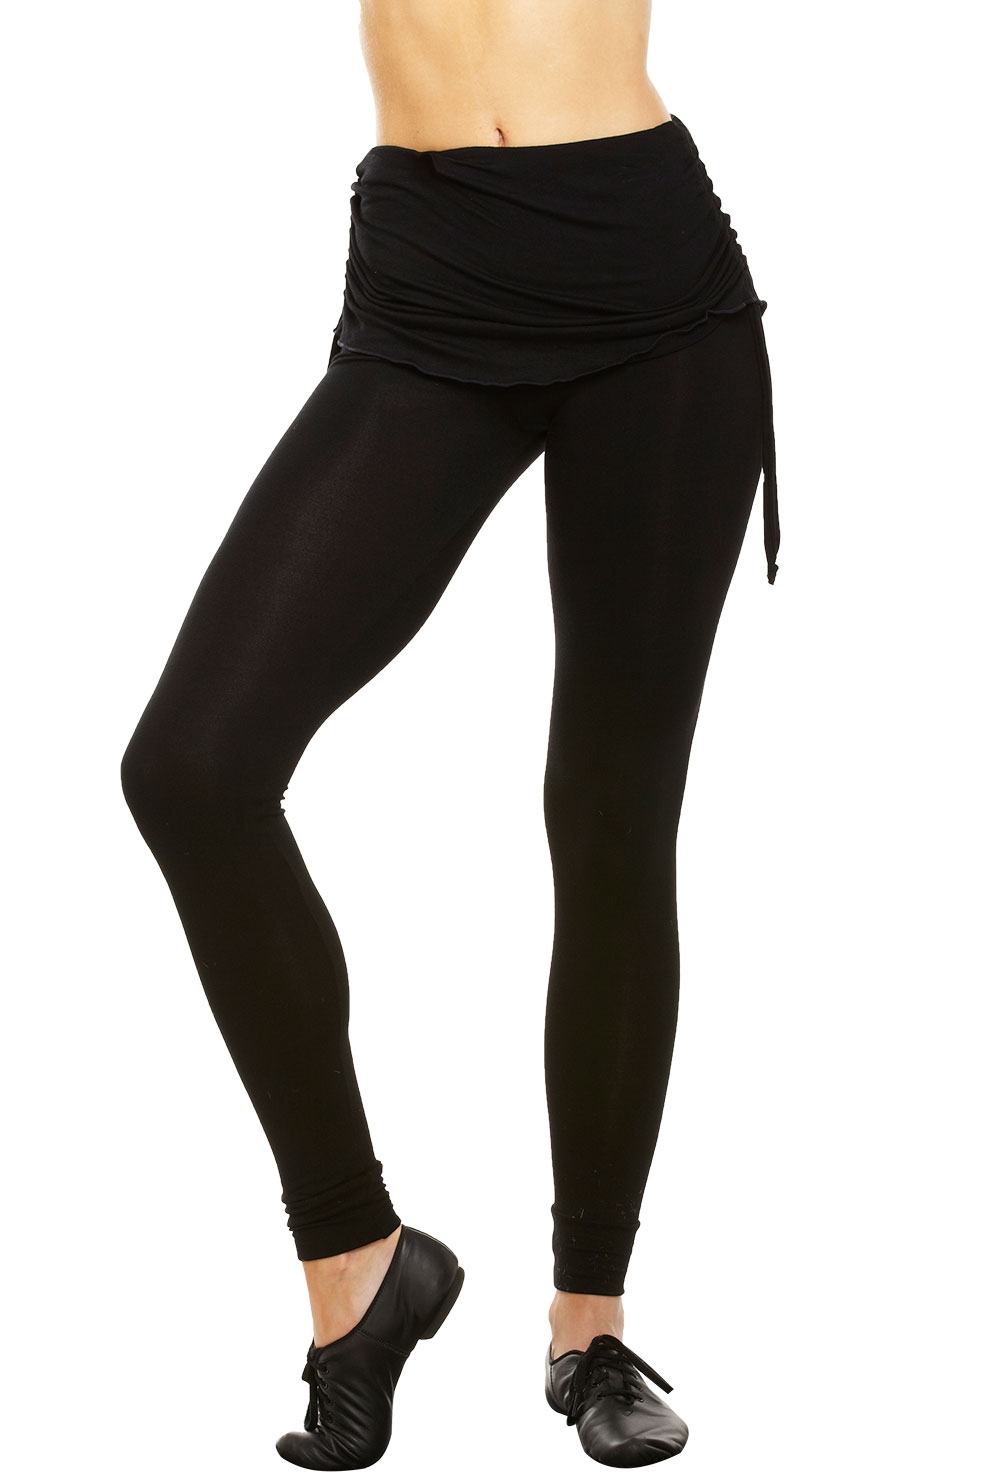 Women's Fold-Over Skirt Leggings. Plus Sizes Available. | Groupon